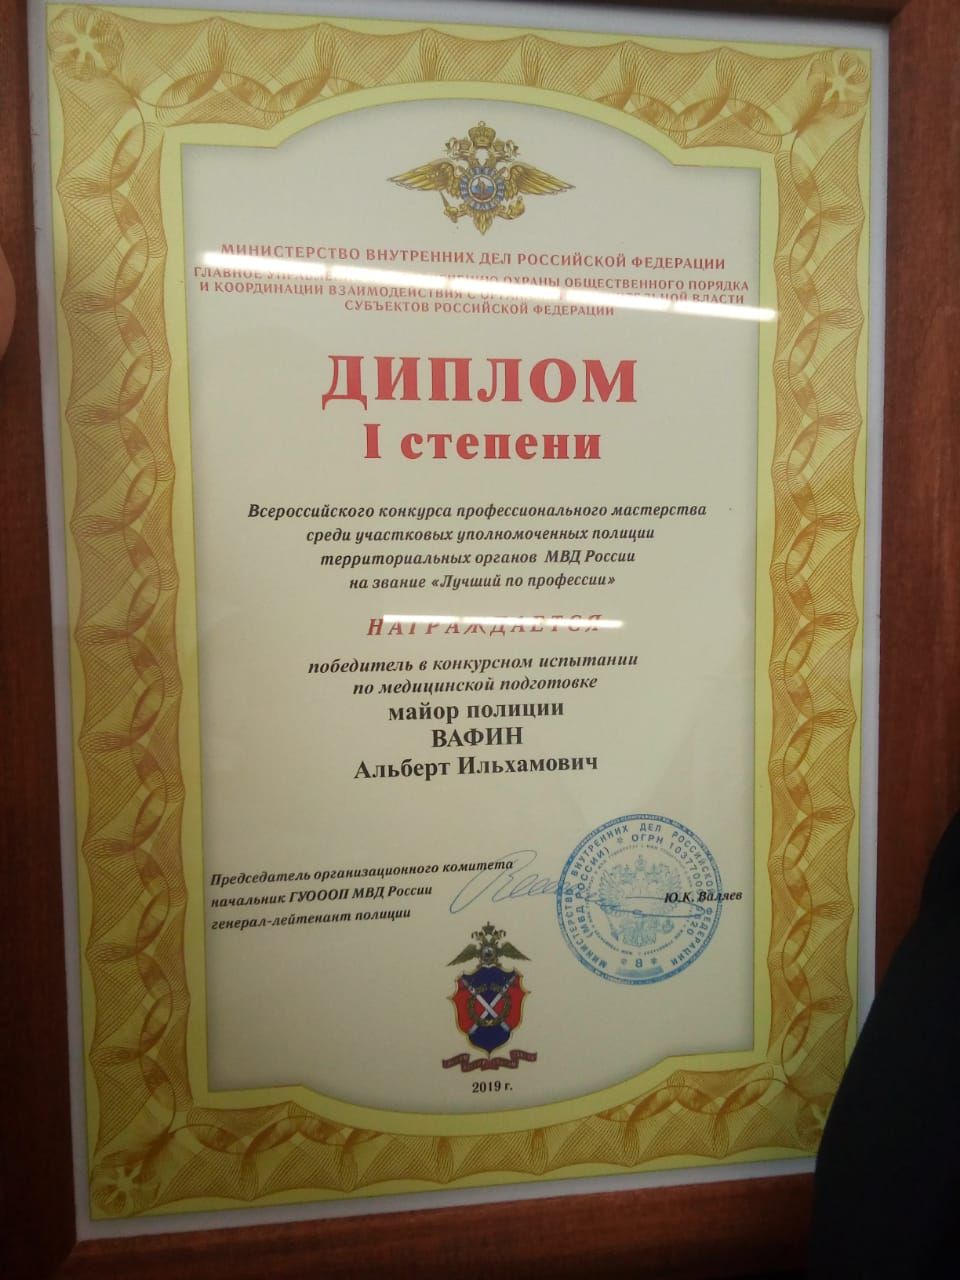 Аксубаевский участковый уполномоченный Альберт Вафин защищал честь Татарстана в конкурсе профмастерства